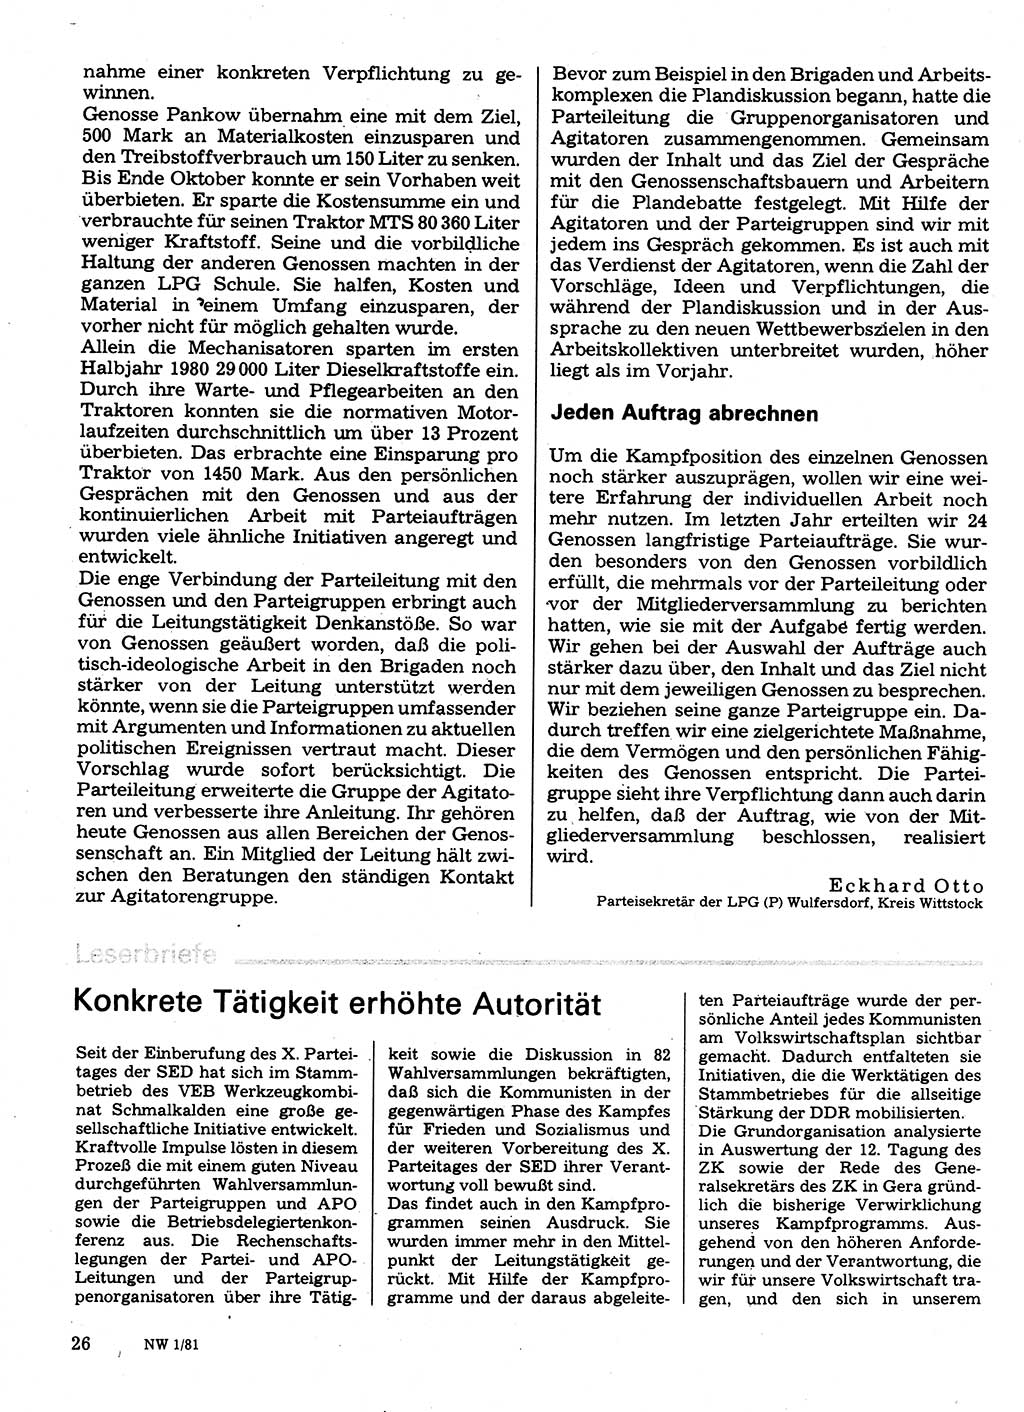 Neuer Weg (NW), Organ des Zentralkomitees (ZK) der SED (Sozialistische Einheitspartei Deutschlands) für Fragen des Parteilebens, 36. Jahrgang [Deutsche Demokratische Republik (DDR)] 1981, Seite 26 (NW ZK SED DDR 1981, S. 26)